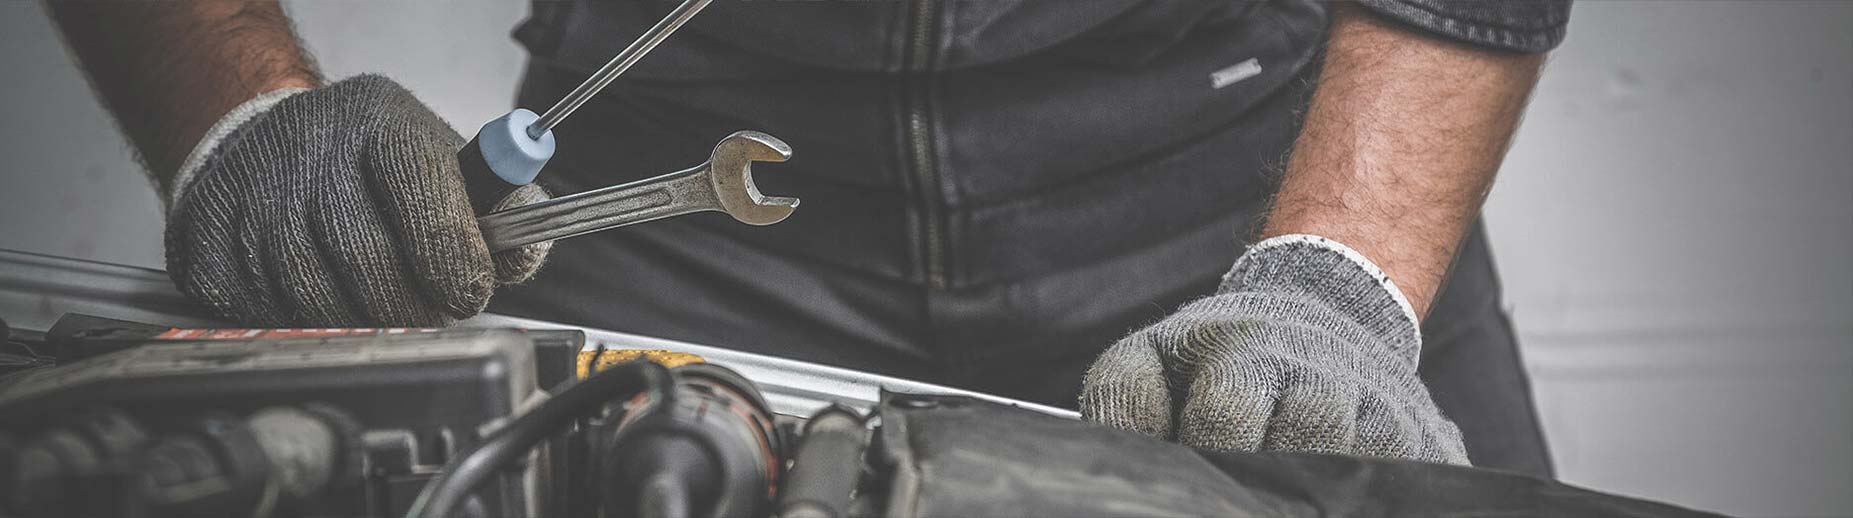 Orrville Car Repair, Brake Repair and Auto Repair